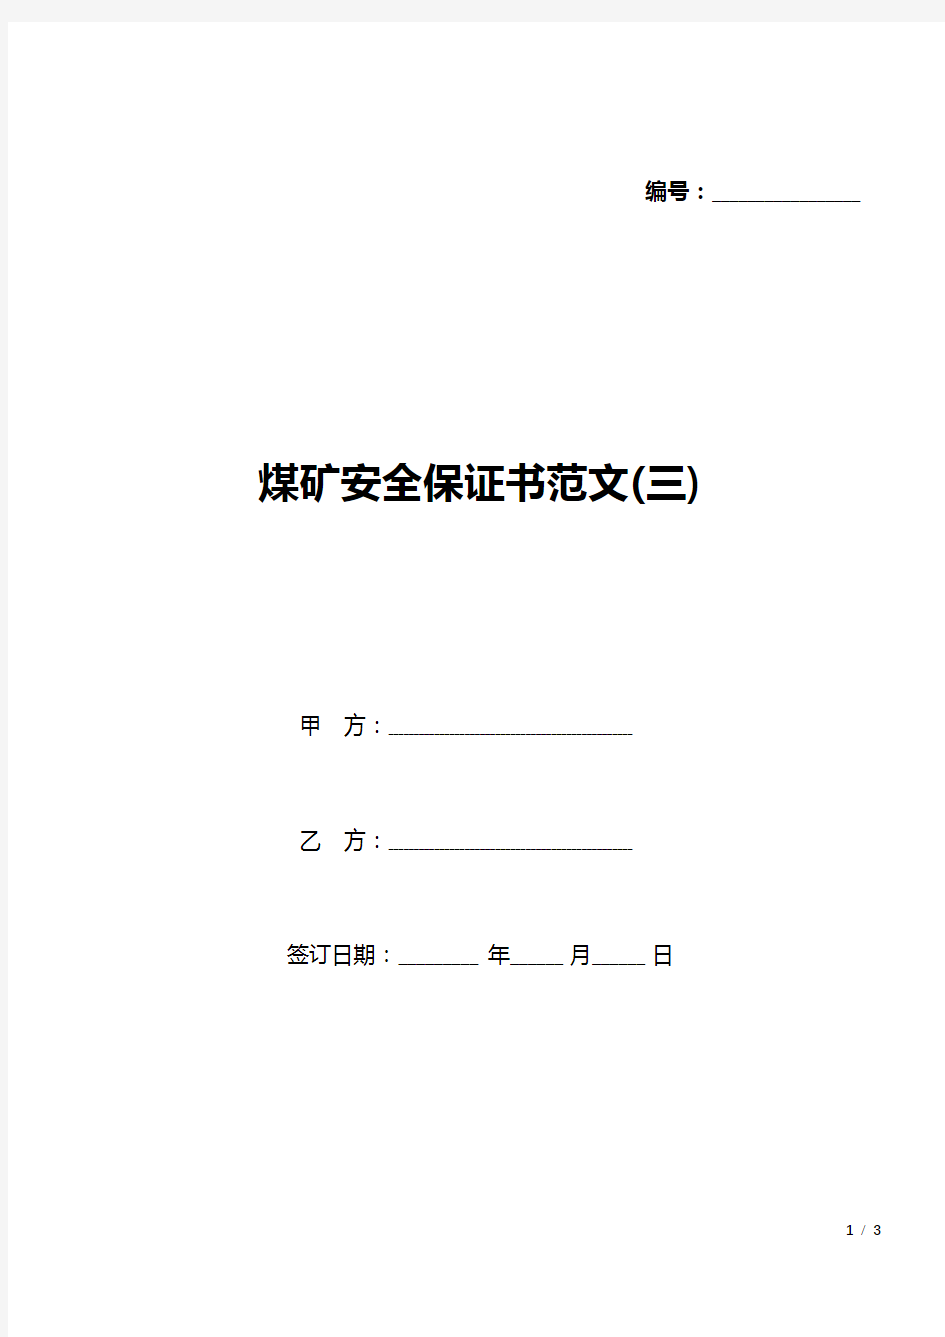 煤矿安全保证书范文(三)(标准版).docx